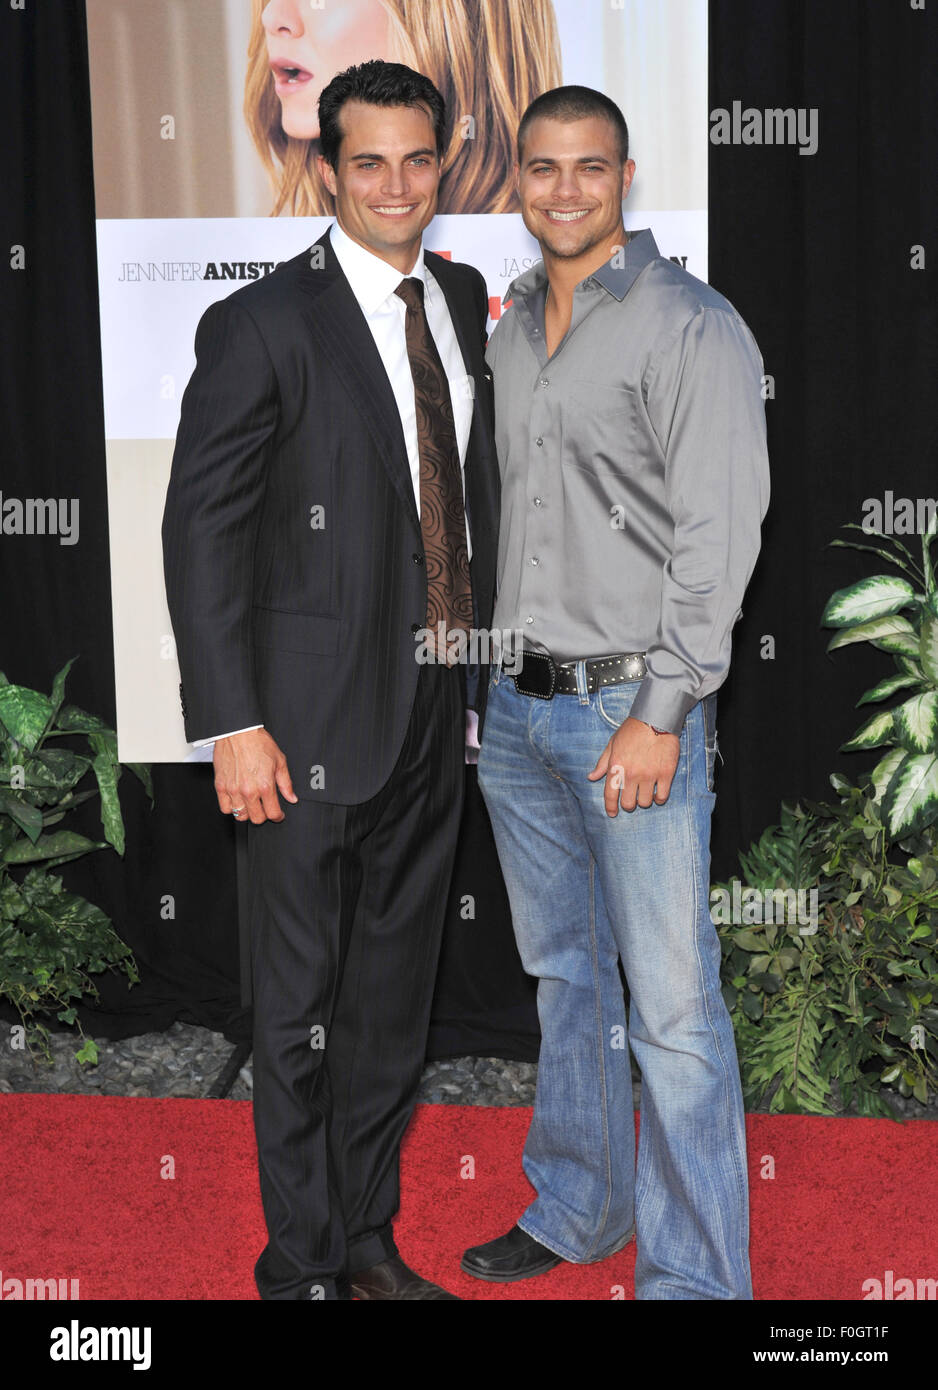 LOS ANGELES, CA - 16. August 2010: Scott Elrod (links) & Bruder Jonathan Elrod bei der Weltpremiere seines neuen Films "The Switch" Cinerama Dome, Hollywood. Stockfoto